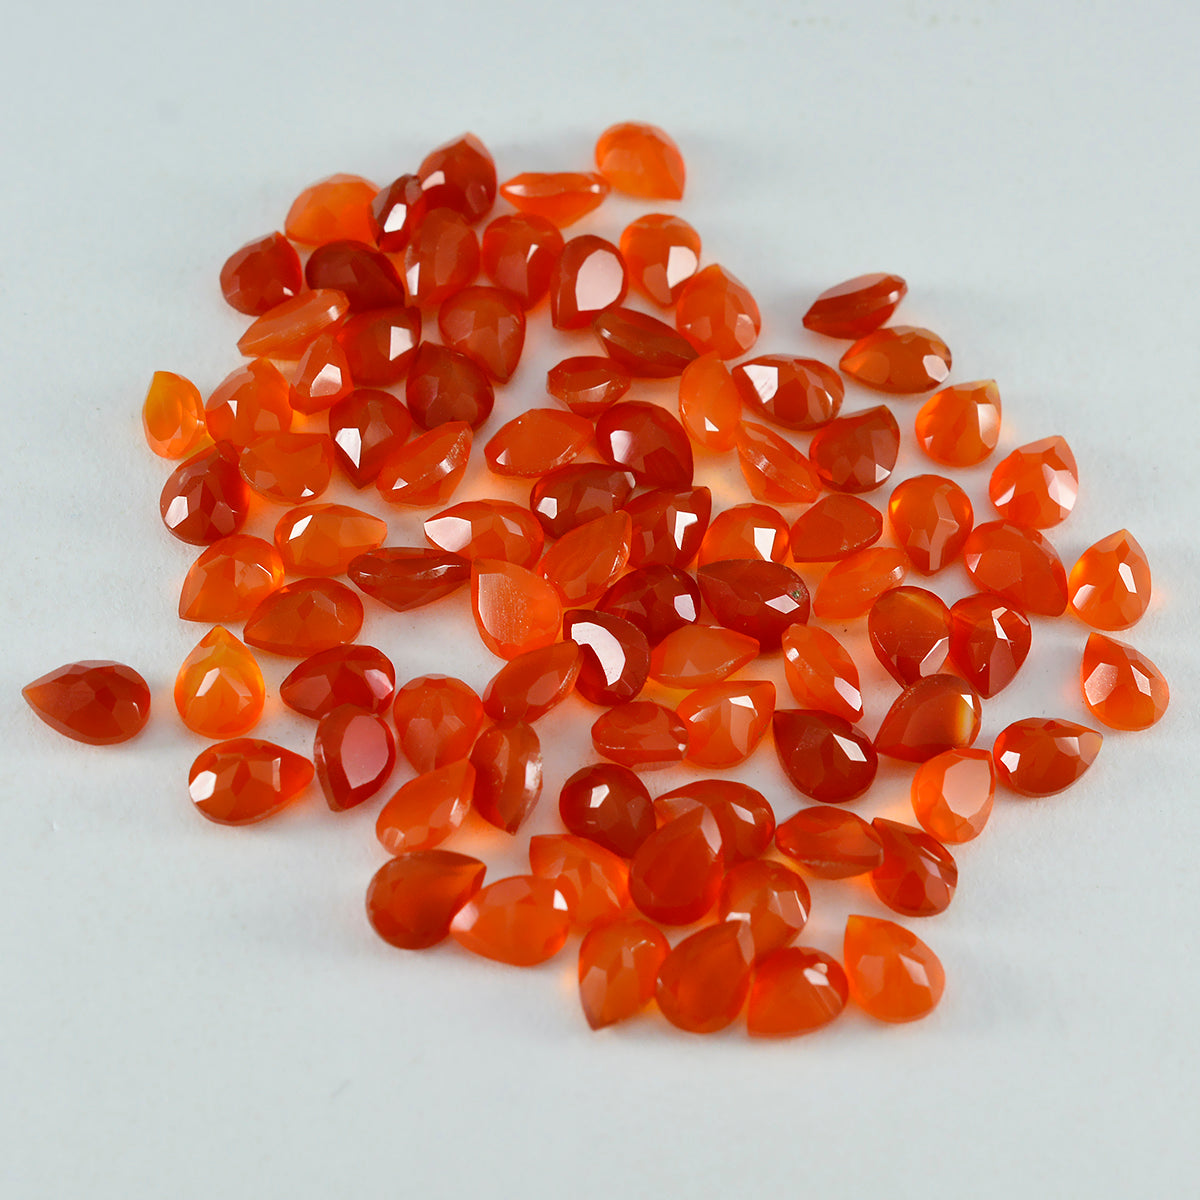 Riyogems 1 pièce d'onyx rouge naturel à facettes 4x6mm en forme de poire, pierres précieuses en vrac de merveilleuse qualité